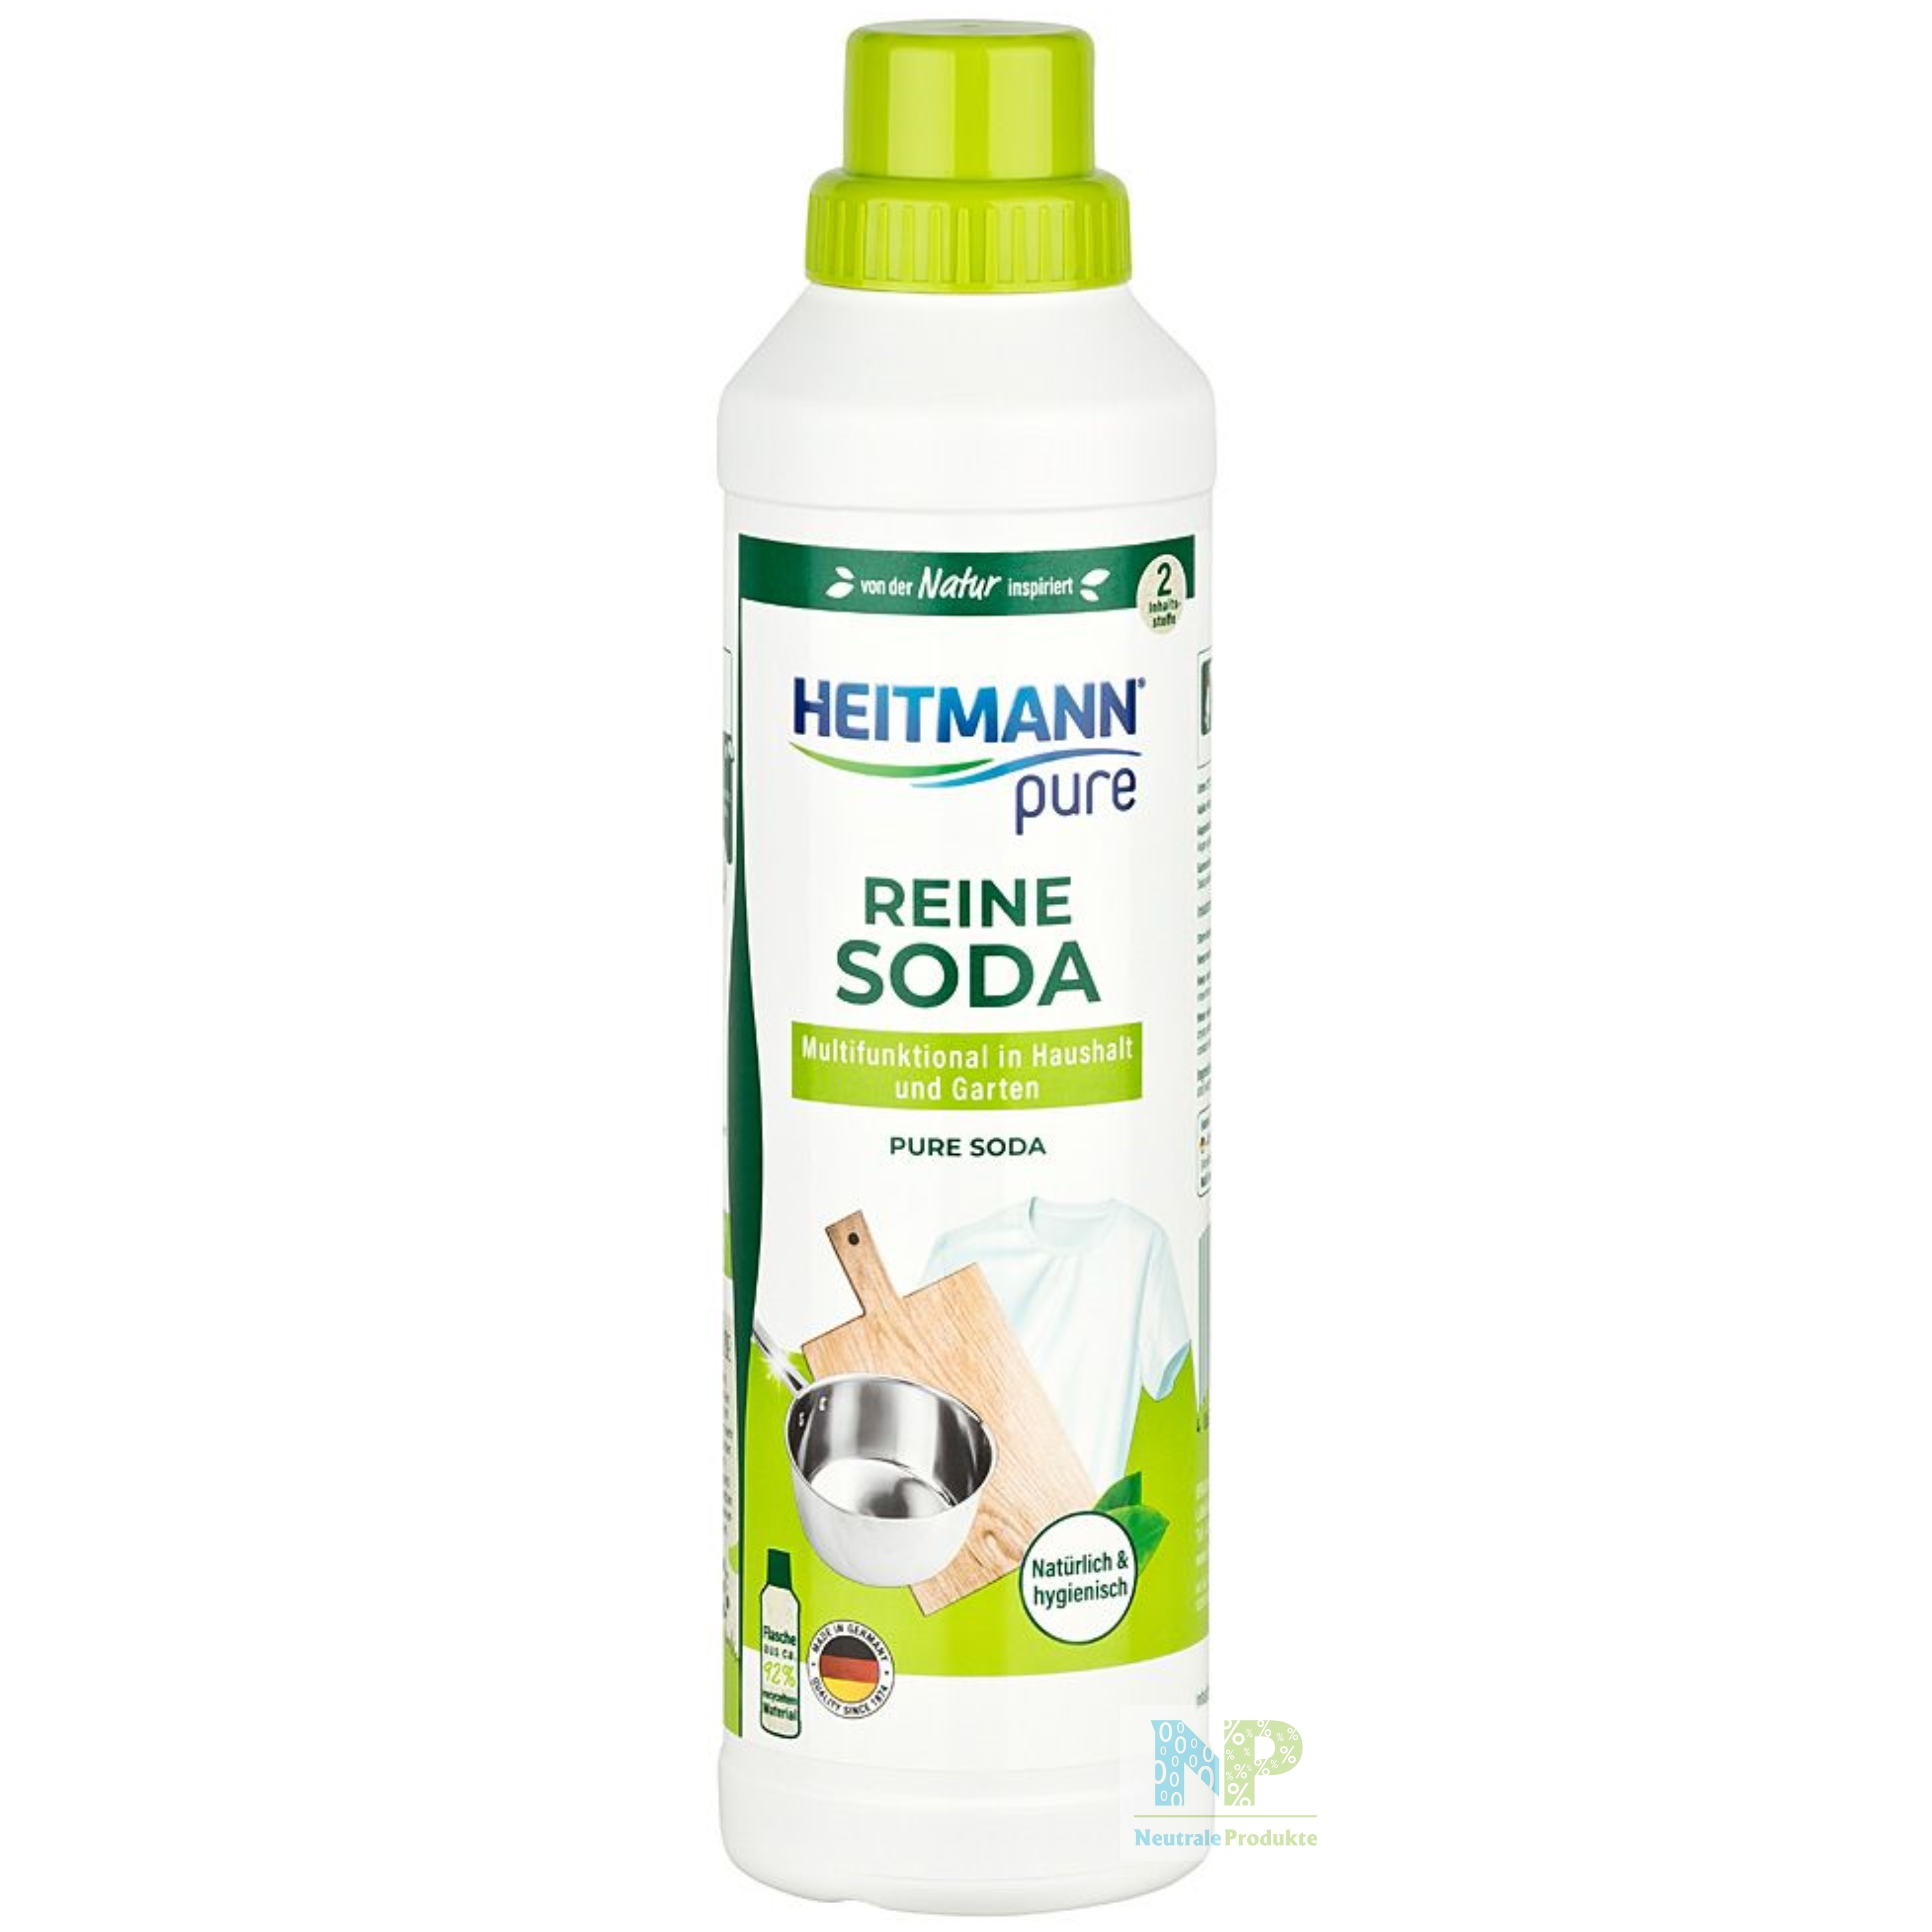 Heitmann pure Reine Kristall-Soda 350g 2er Pack Reiniger für den Haushalt 